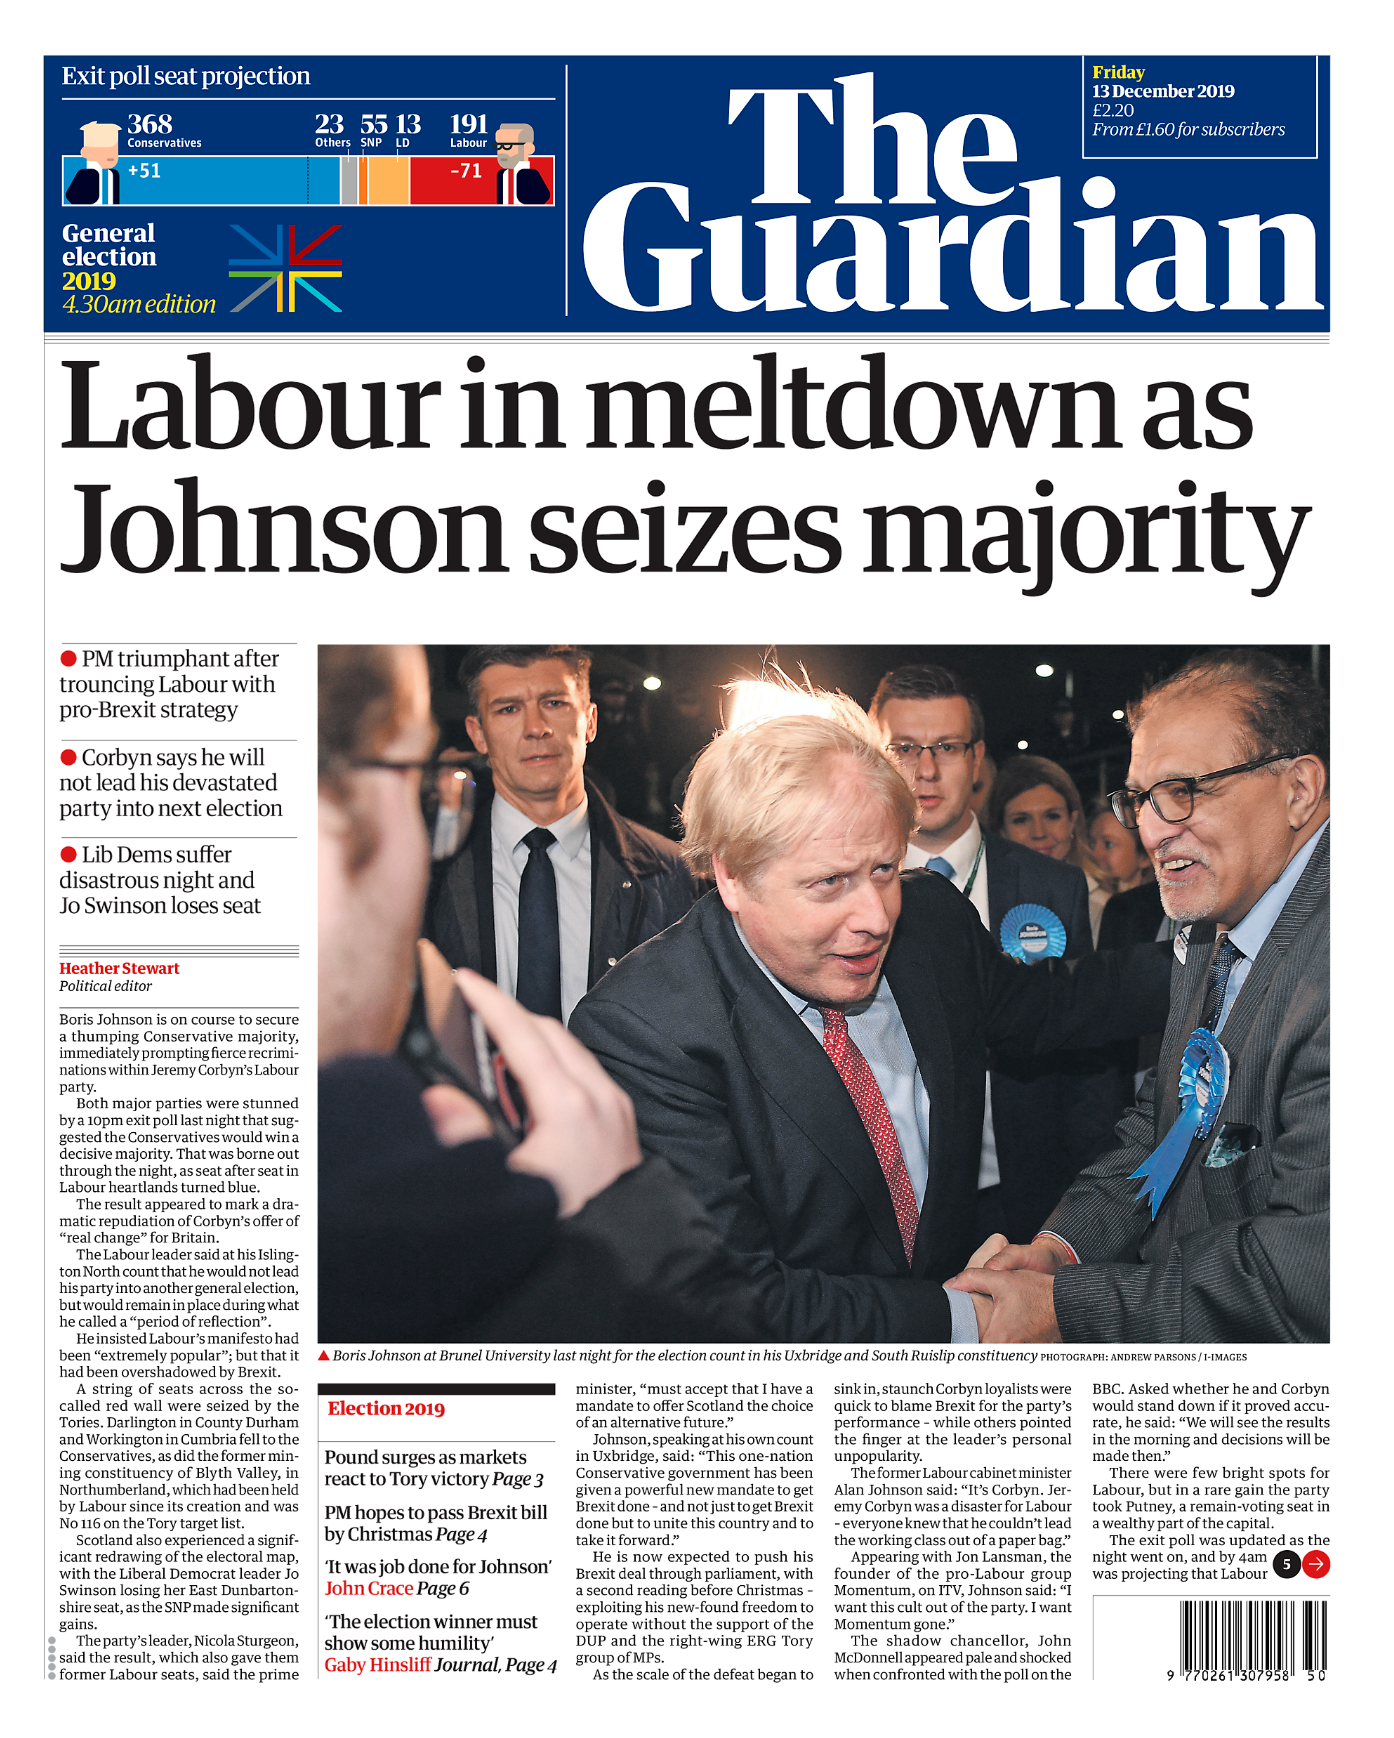 Tidningen The Guardian har uttalat varit emot Brexit och brukar räknas som oberoende eller Labour-trogen. Vinkeln landar i Labours misslyckande.